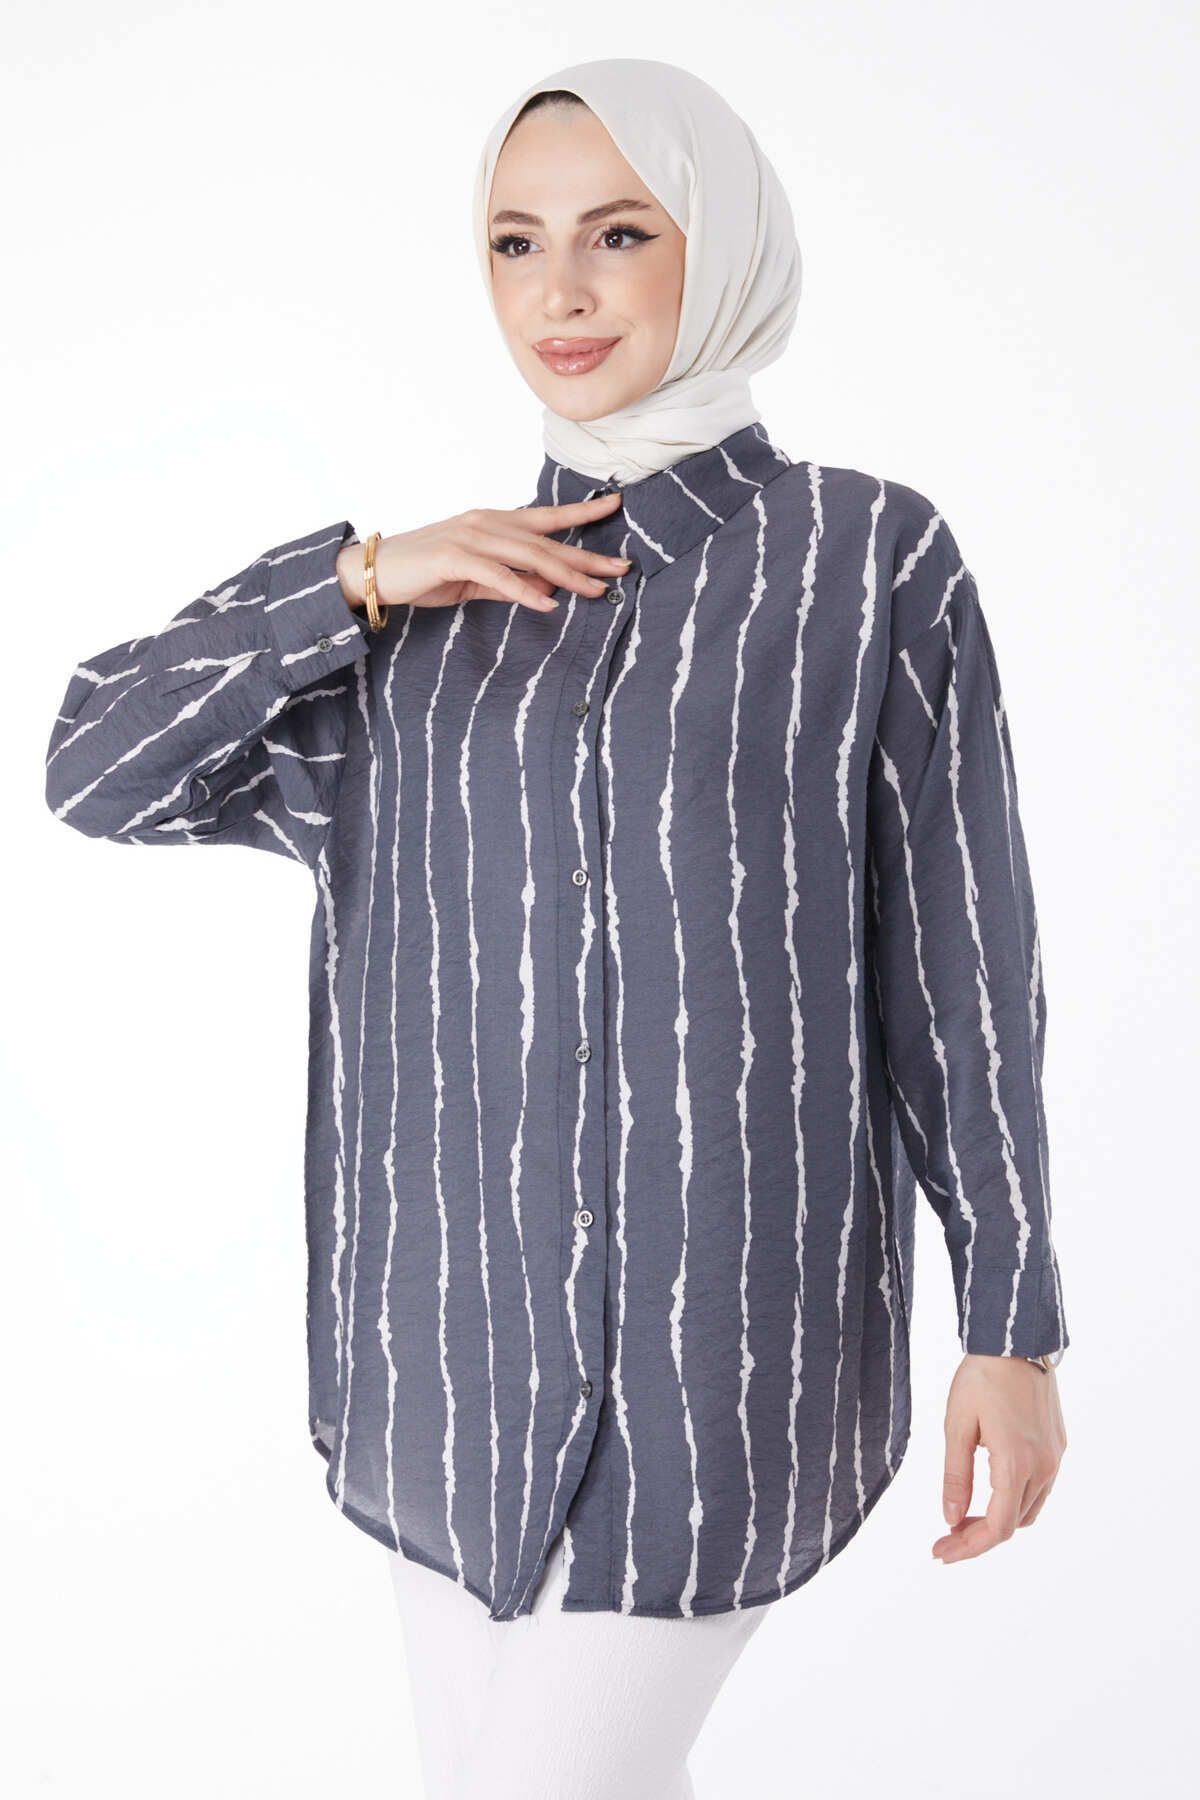 TOFİSA Düz Gömlek Yaka Kadın Antrasit Desenli Gömlek - 25124